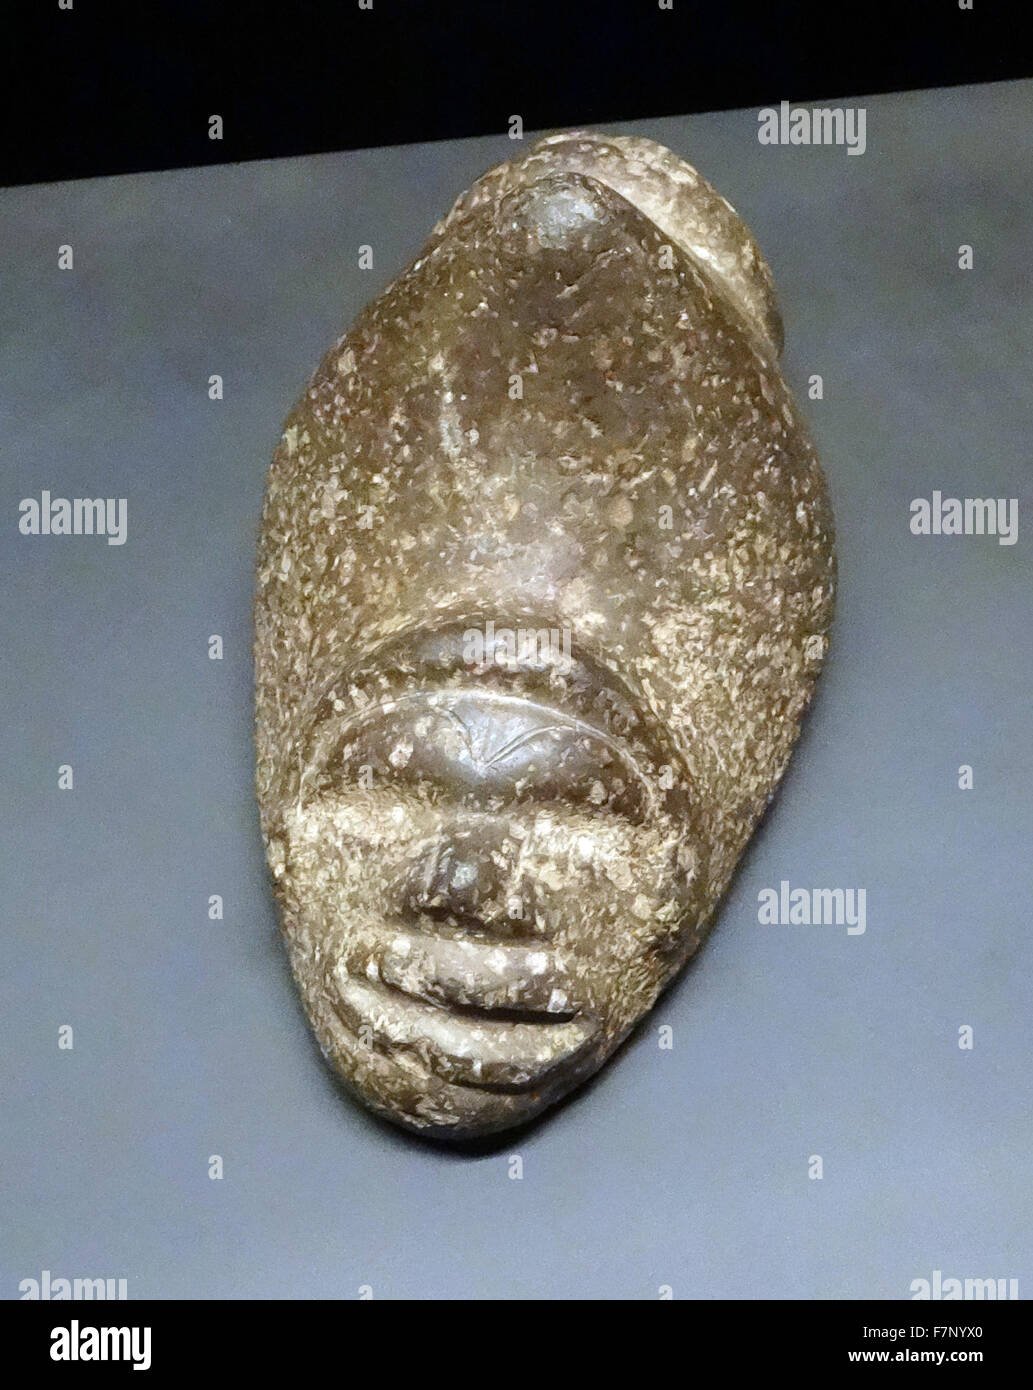 Stein zeigte aus der Taíno-Kultur. Erstellt durch das Volk der Arawak, die Ureinwohner der Karibik. Datiert aus dem 16. Jahrhundert Stockfoto